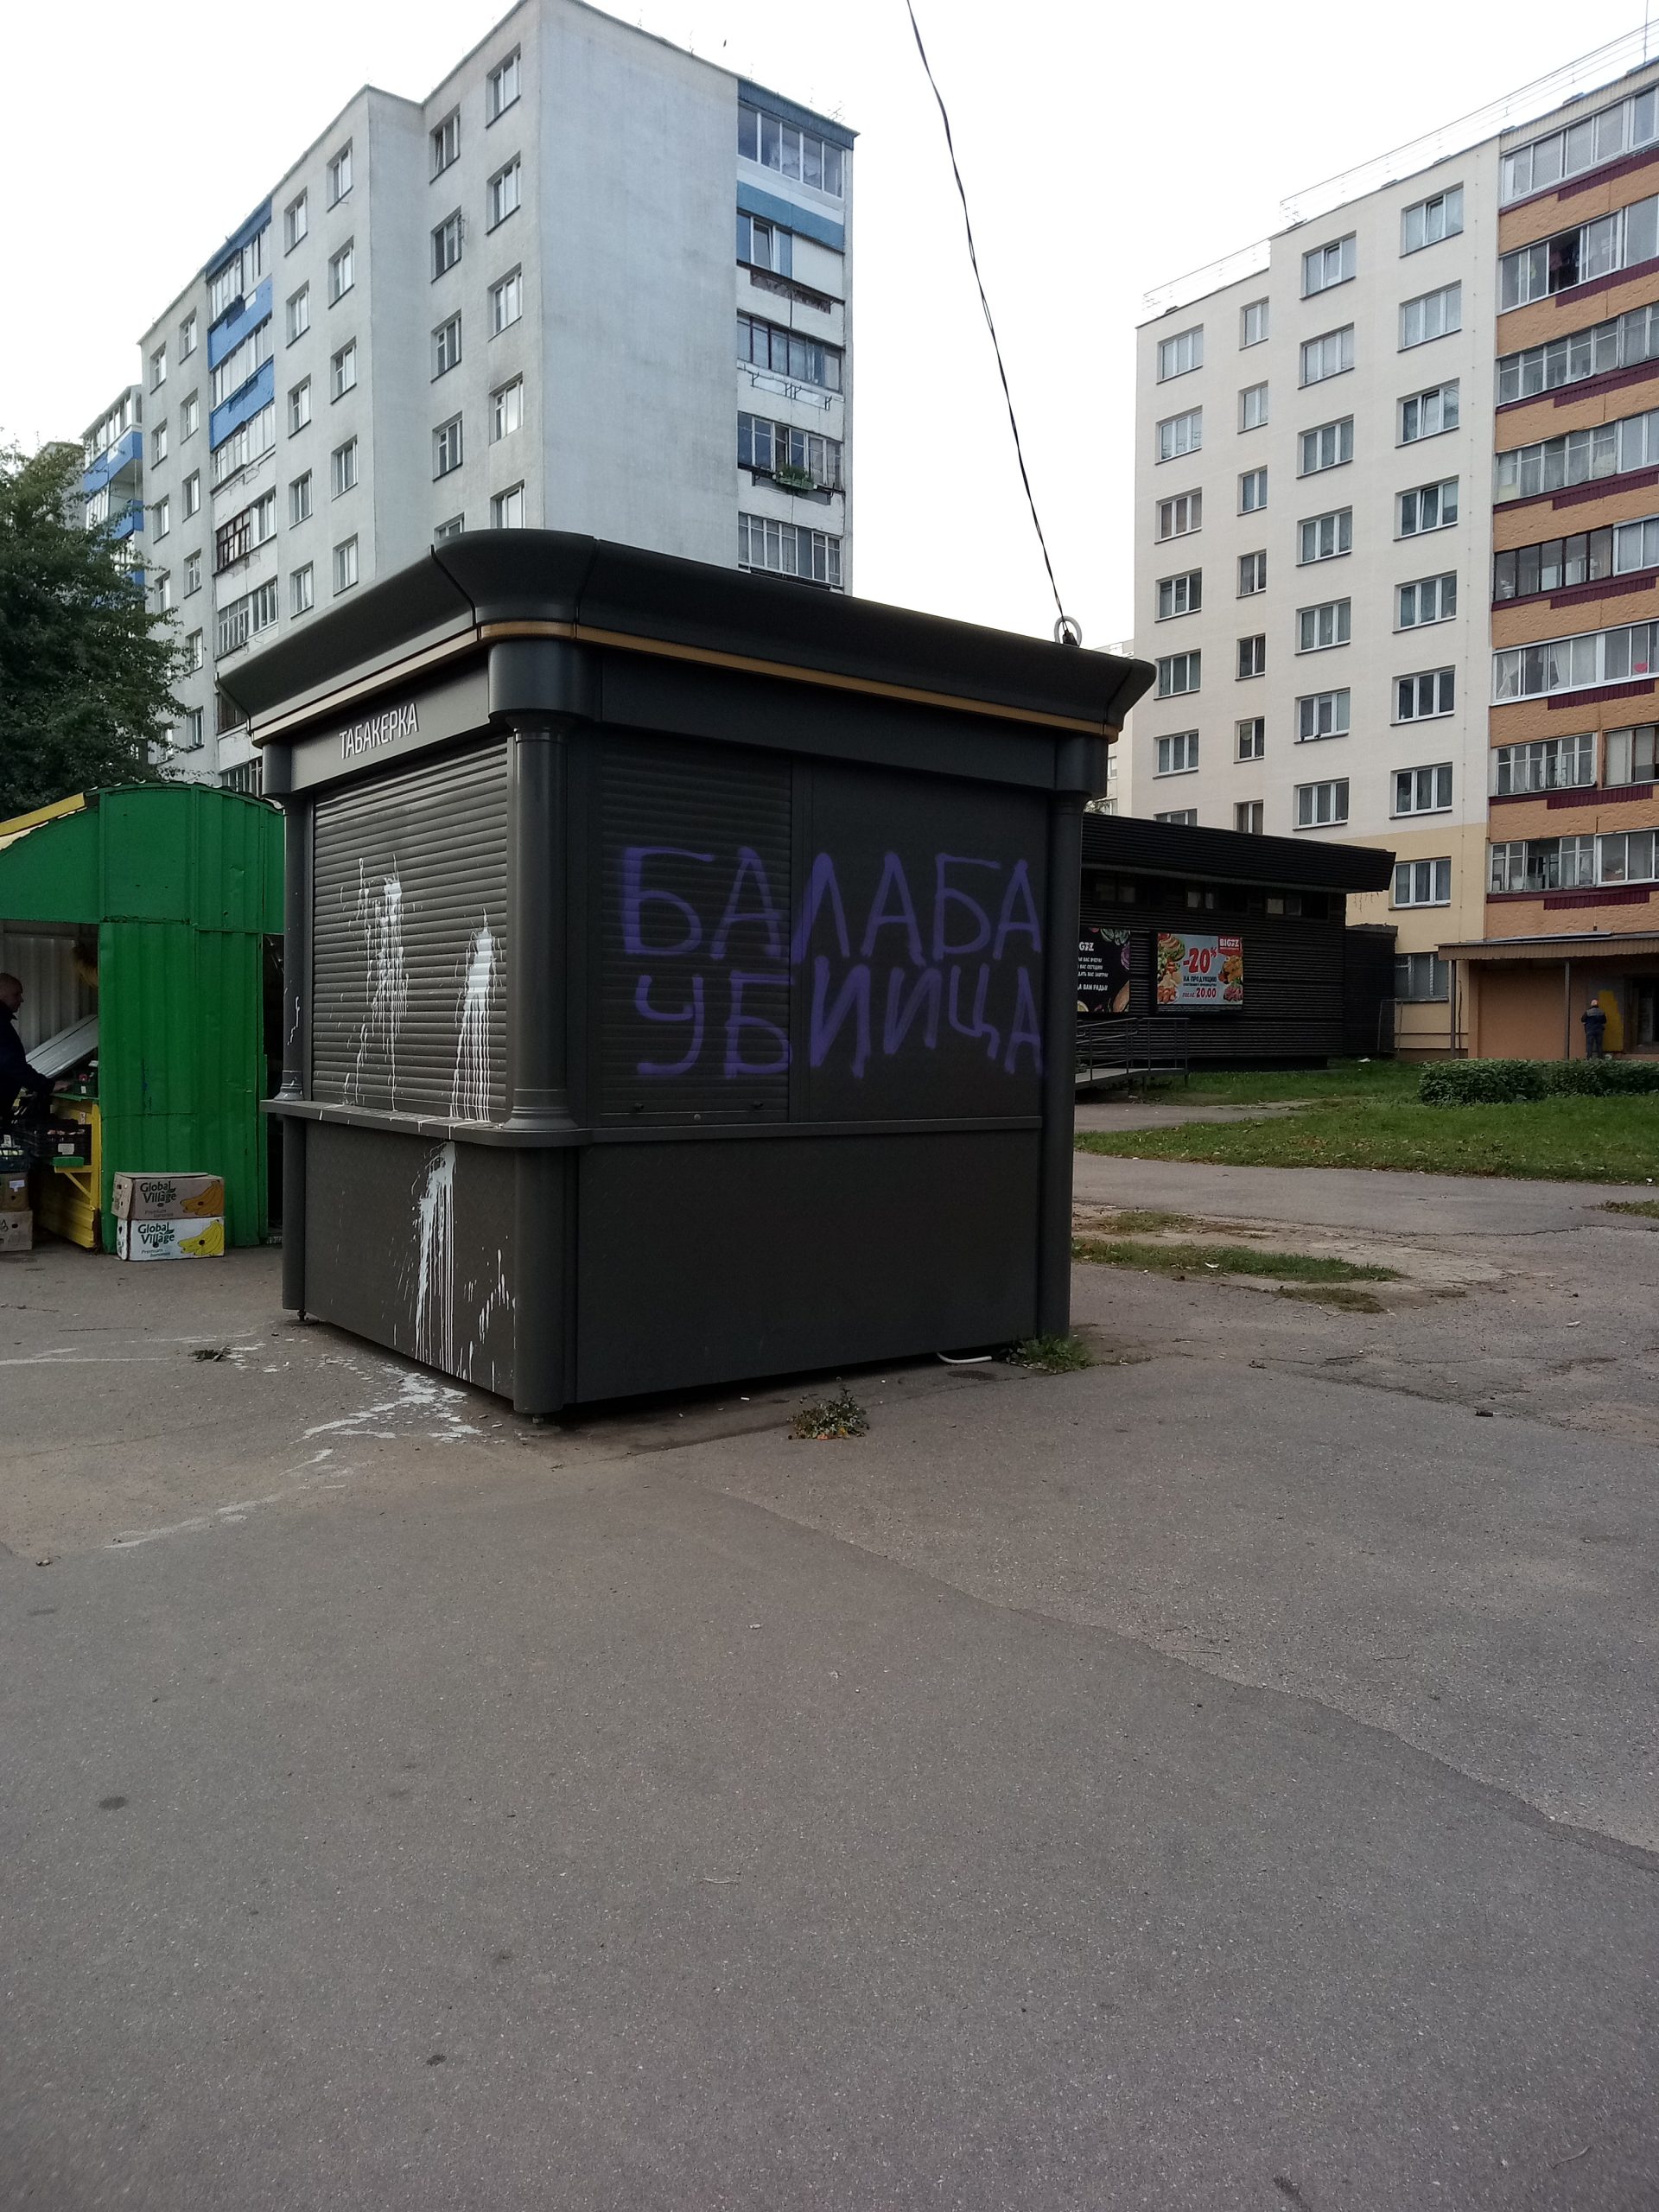 Балаба запустил флэшмоб на улицах Беларуси